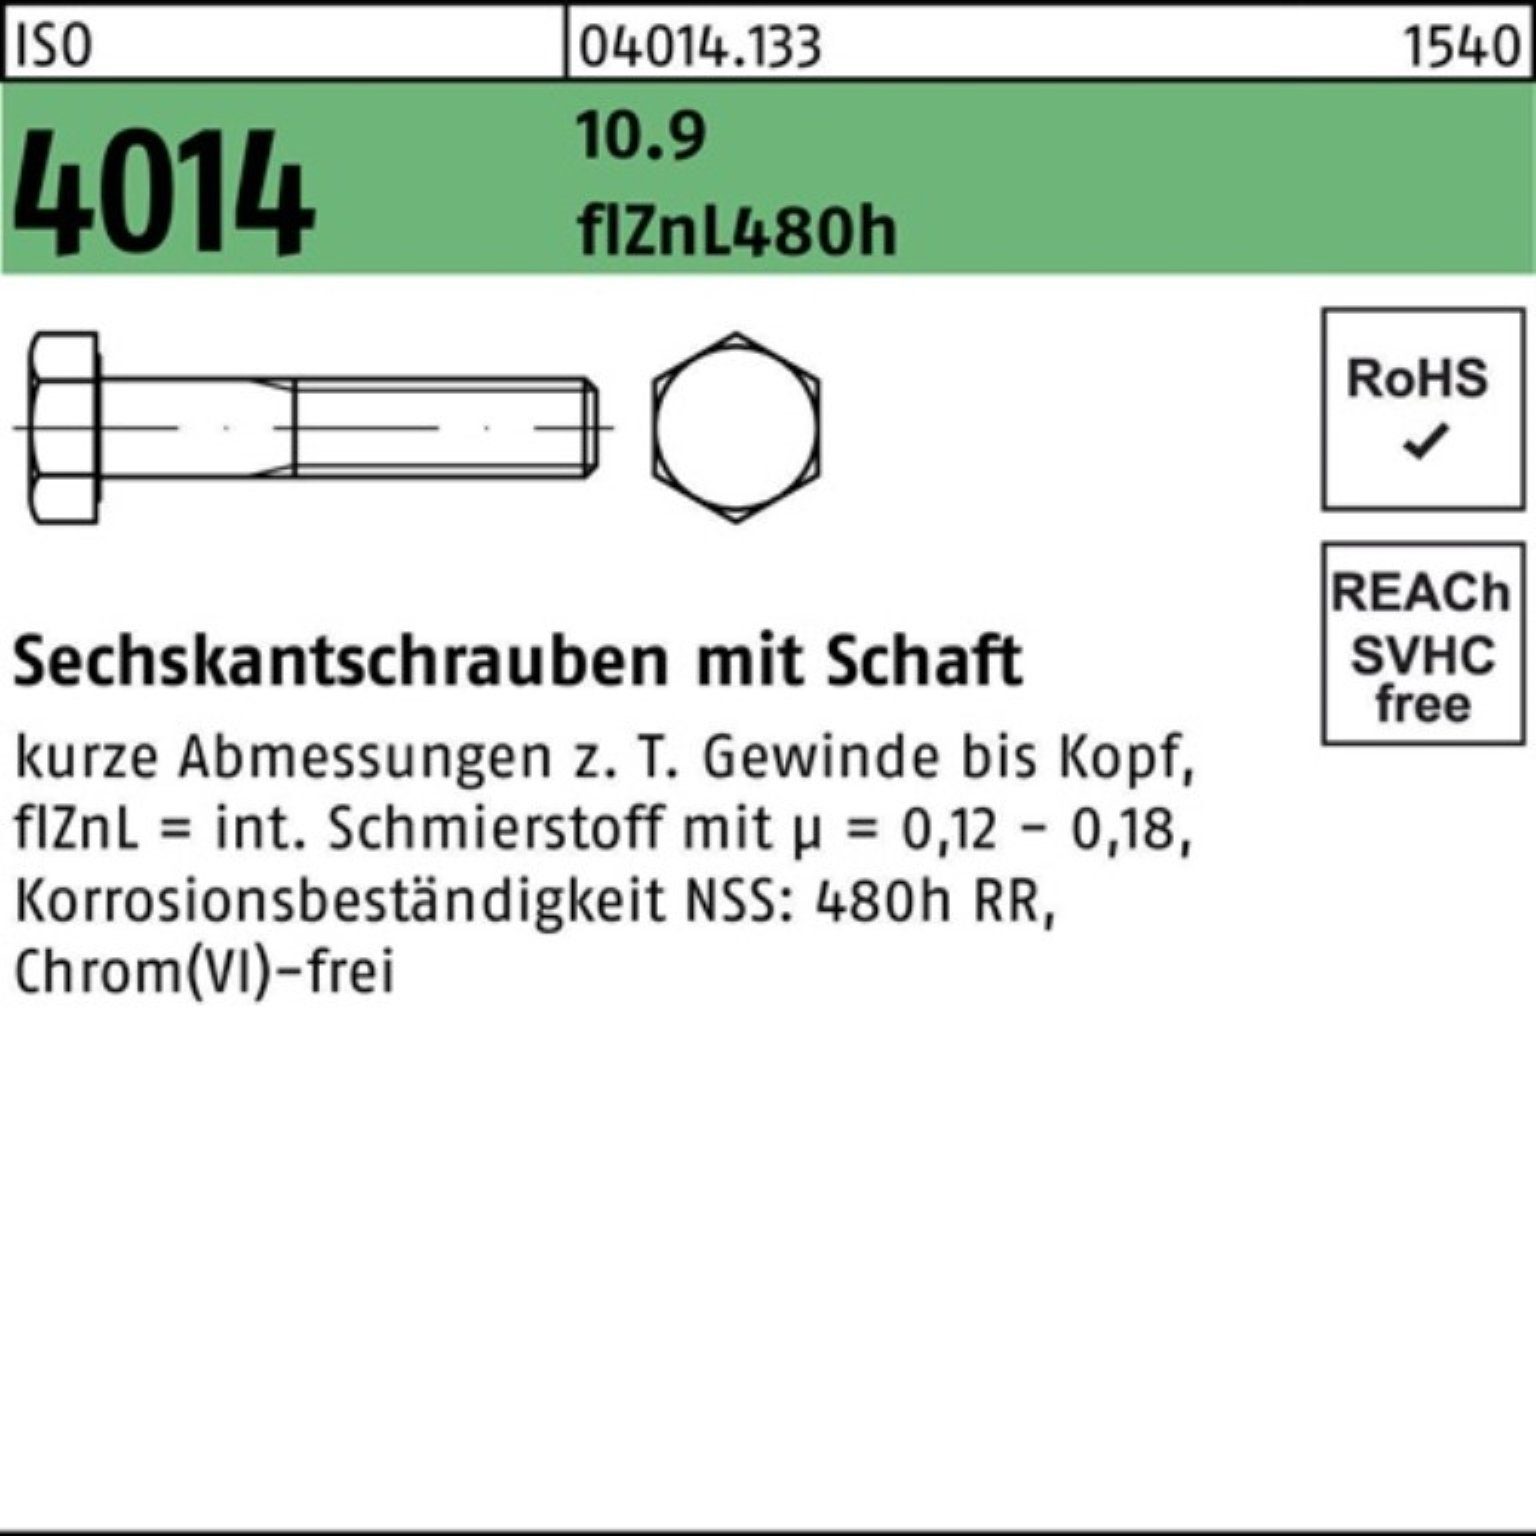 Bufab Sechskantschraube ISO Sechskantschraube Schaft 4014 M10x 100er Pack 60 10.9 zinklamellen